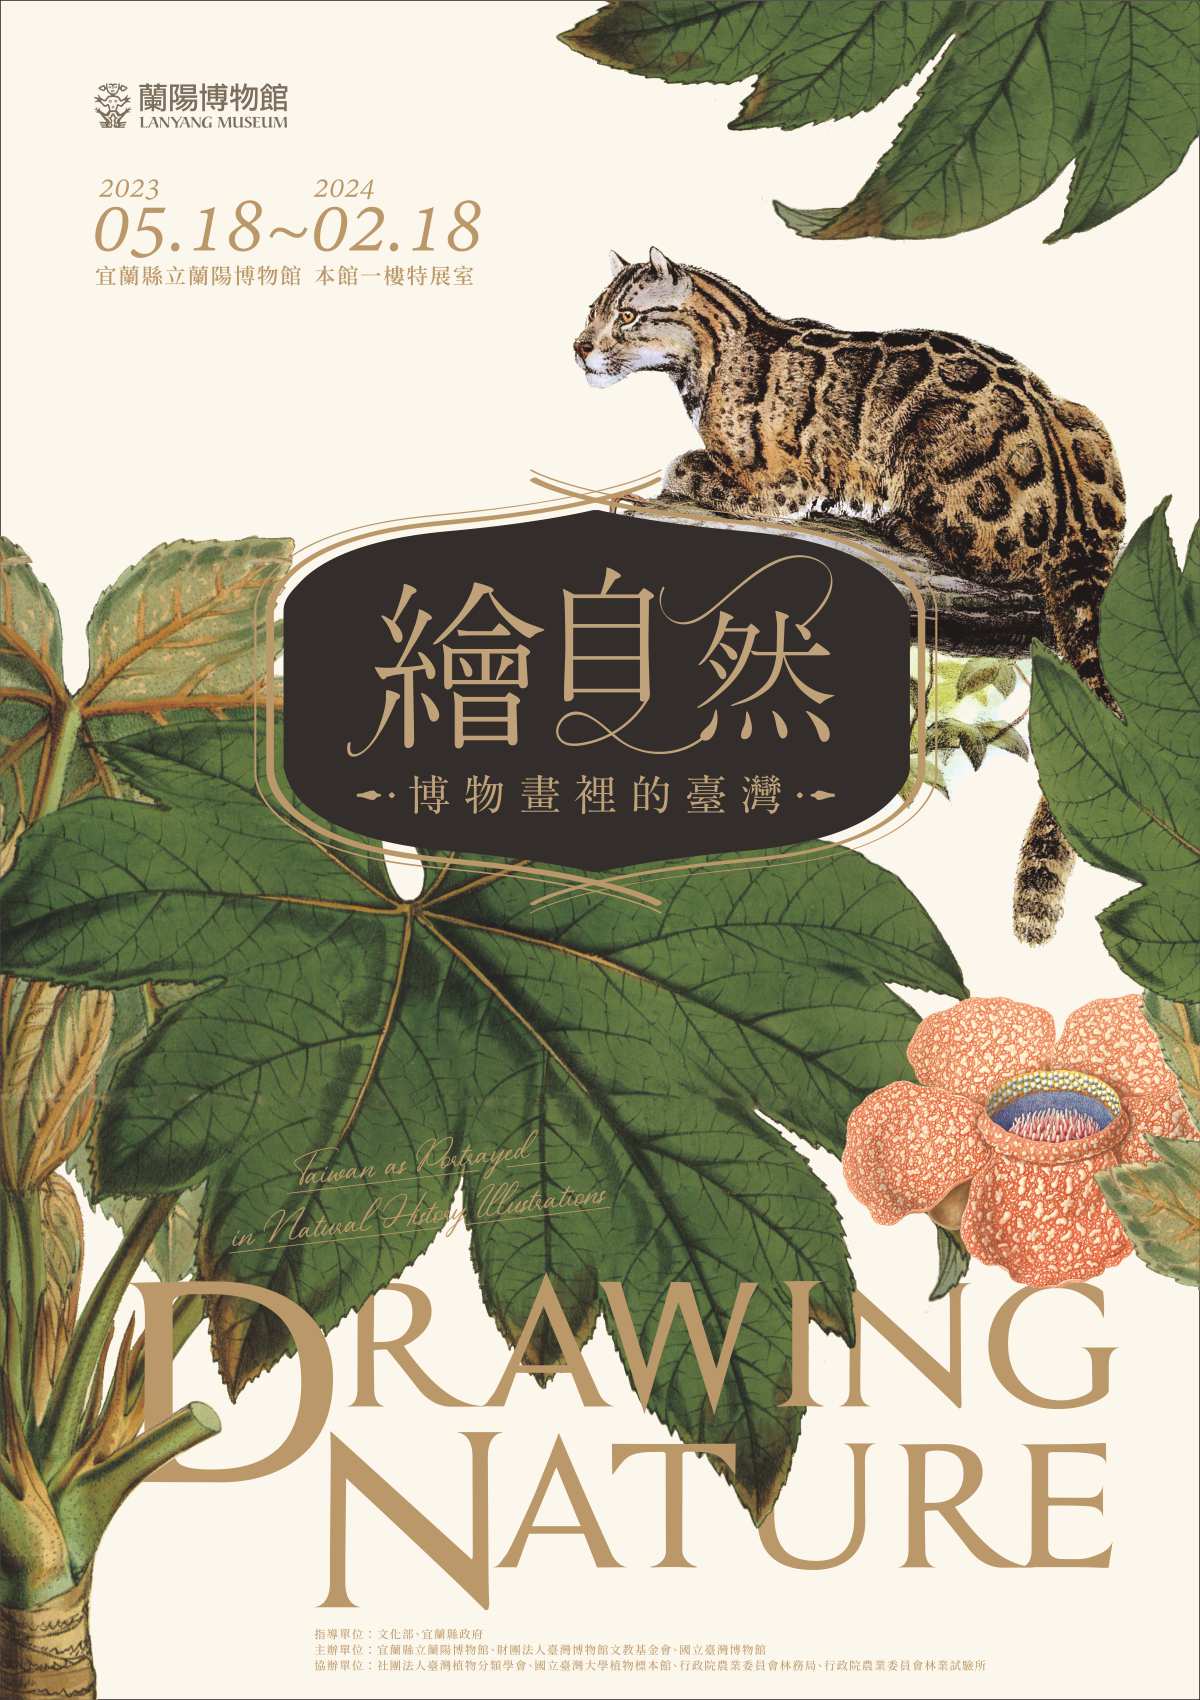 特展 繪自然 - 博物畫裡的臺灣特展巡迴展（蘭陽博物館）